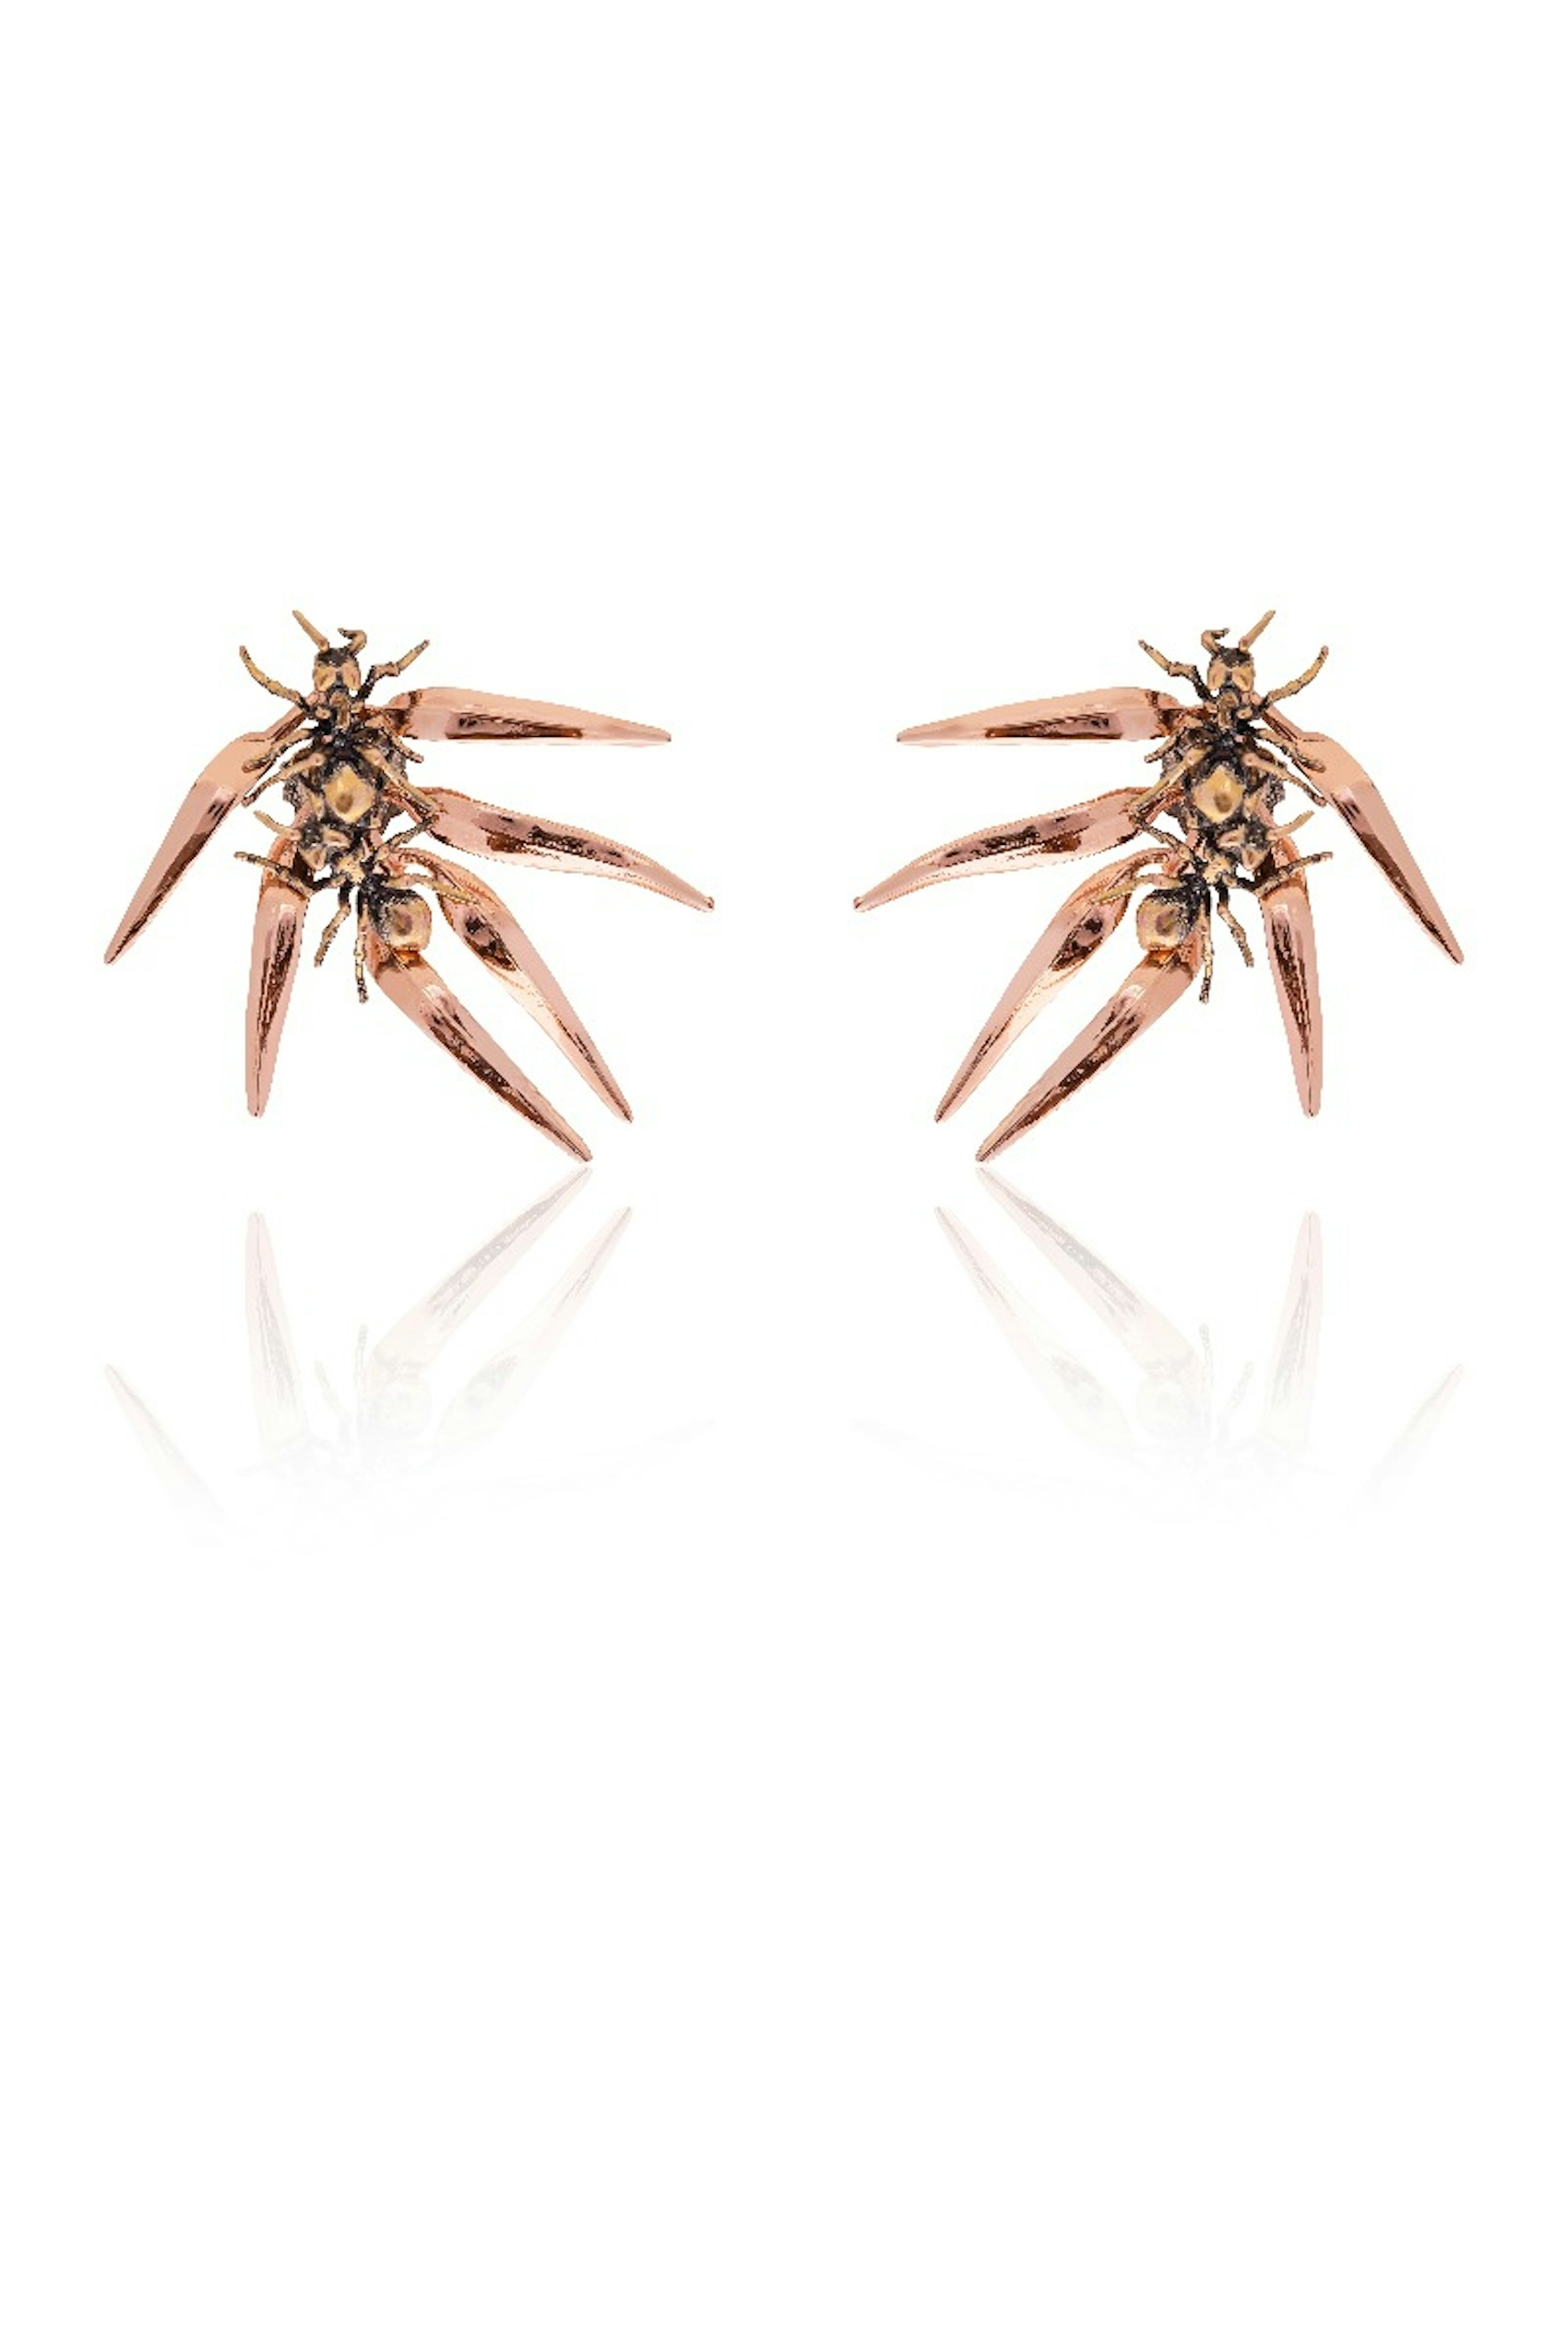 Ants & Ferns Earrings